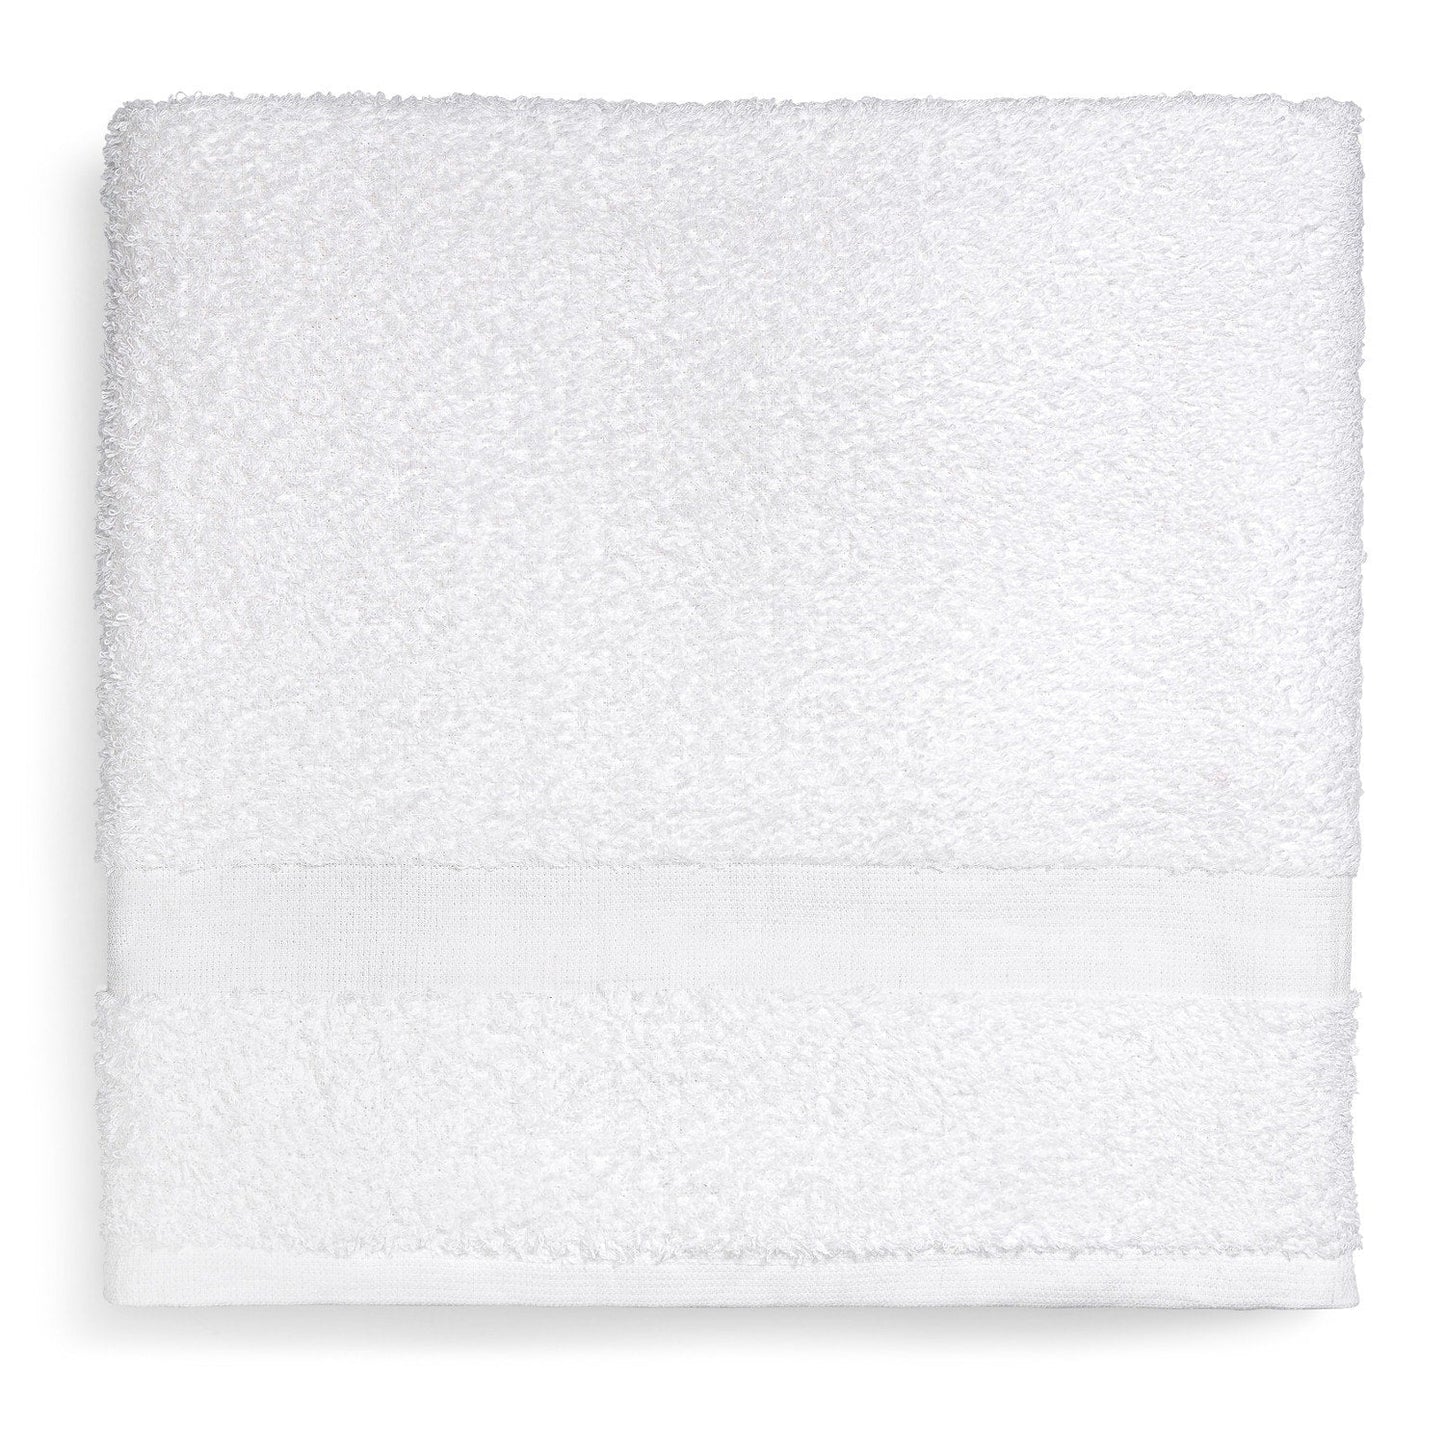 Platinum Bath Towel, 24"x50"-10.5 LBS, 4 DZ/cs